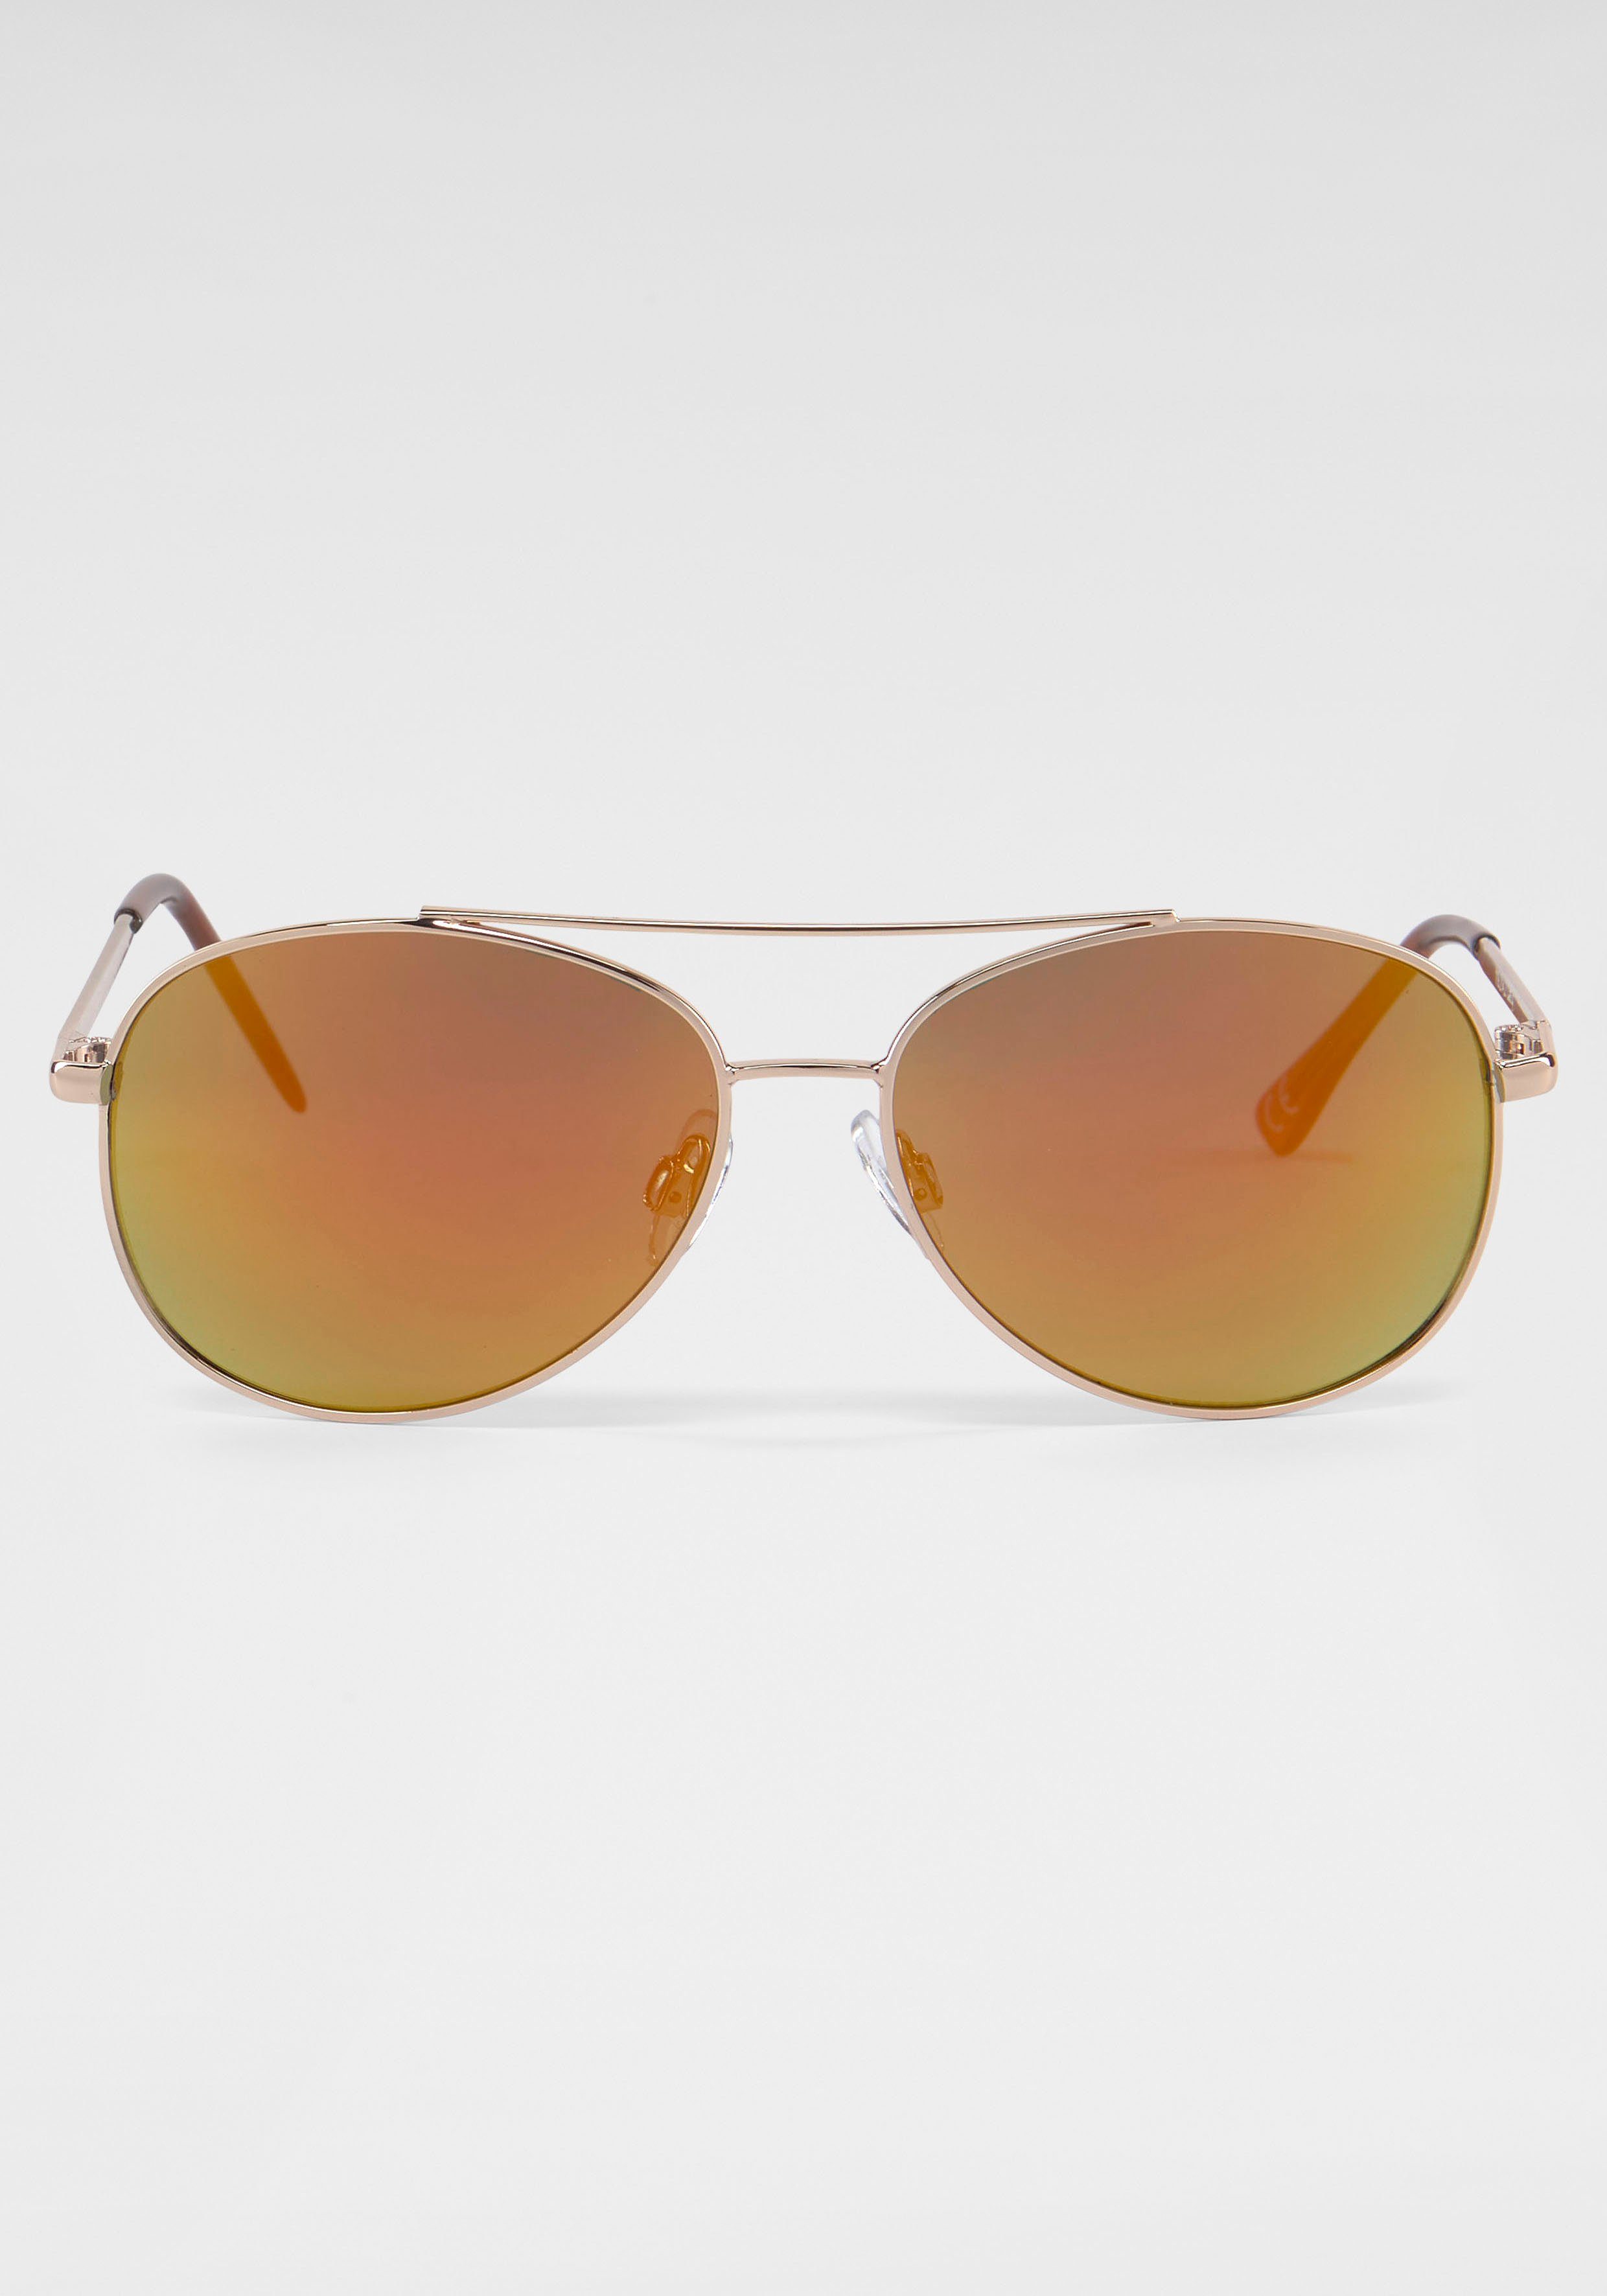 Trendige PRIMETTA Sonnenbrille, Eyewear Sonnenbrille